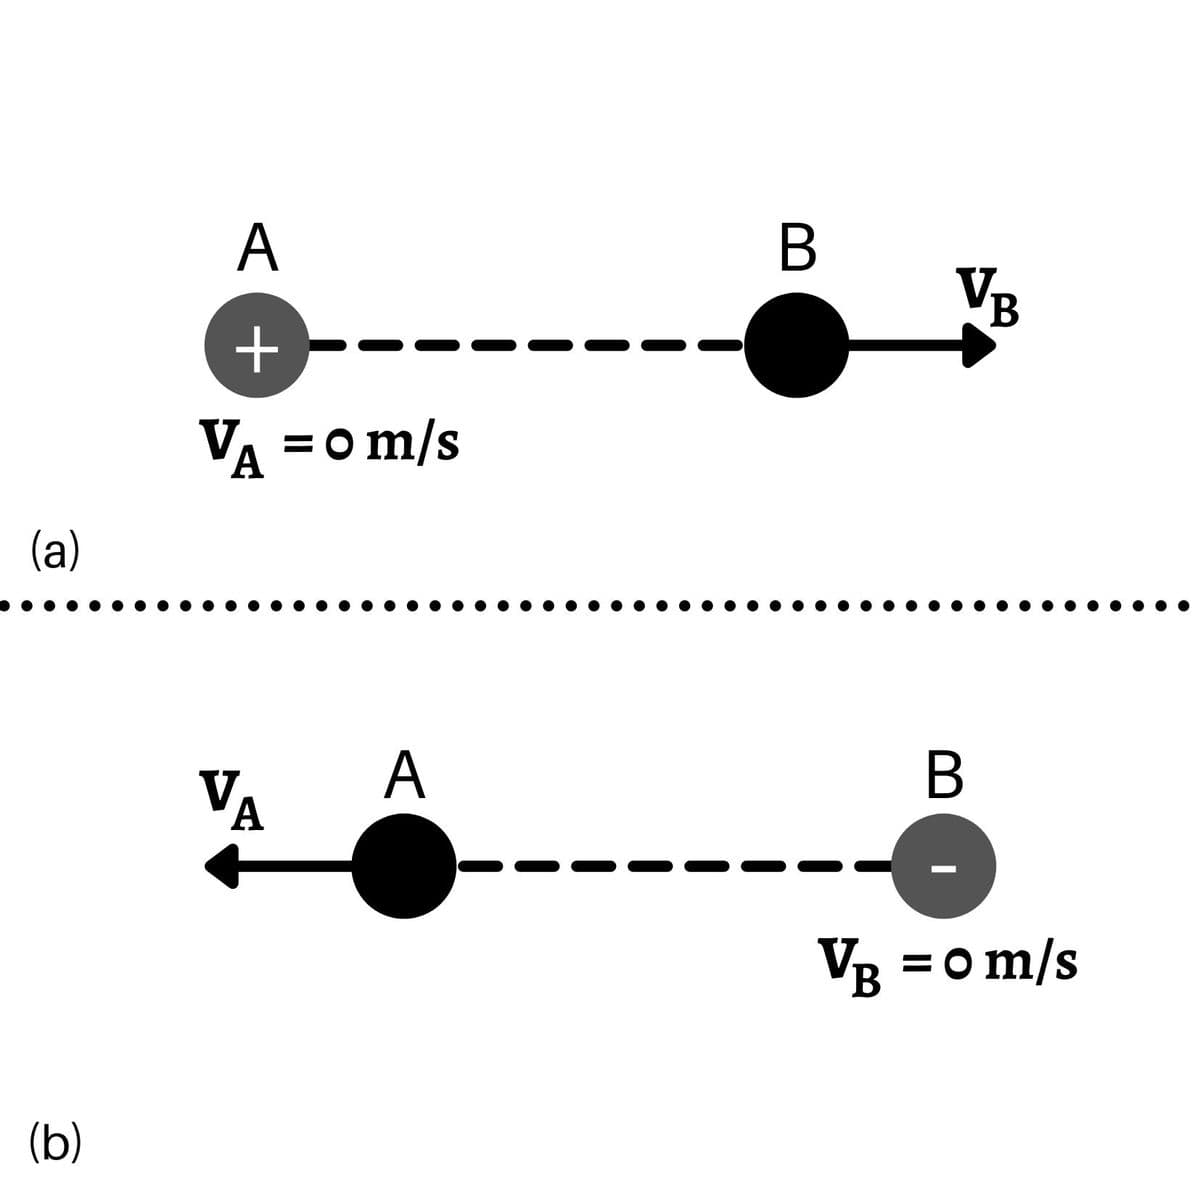 VR
B.
+,
VA =o m/s
A
(a)
A
B
VA
VB =o m/s
(b)
